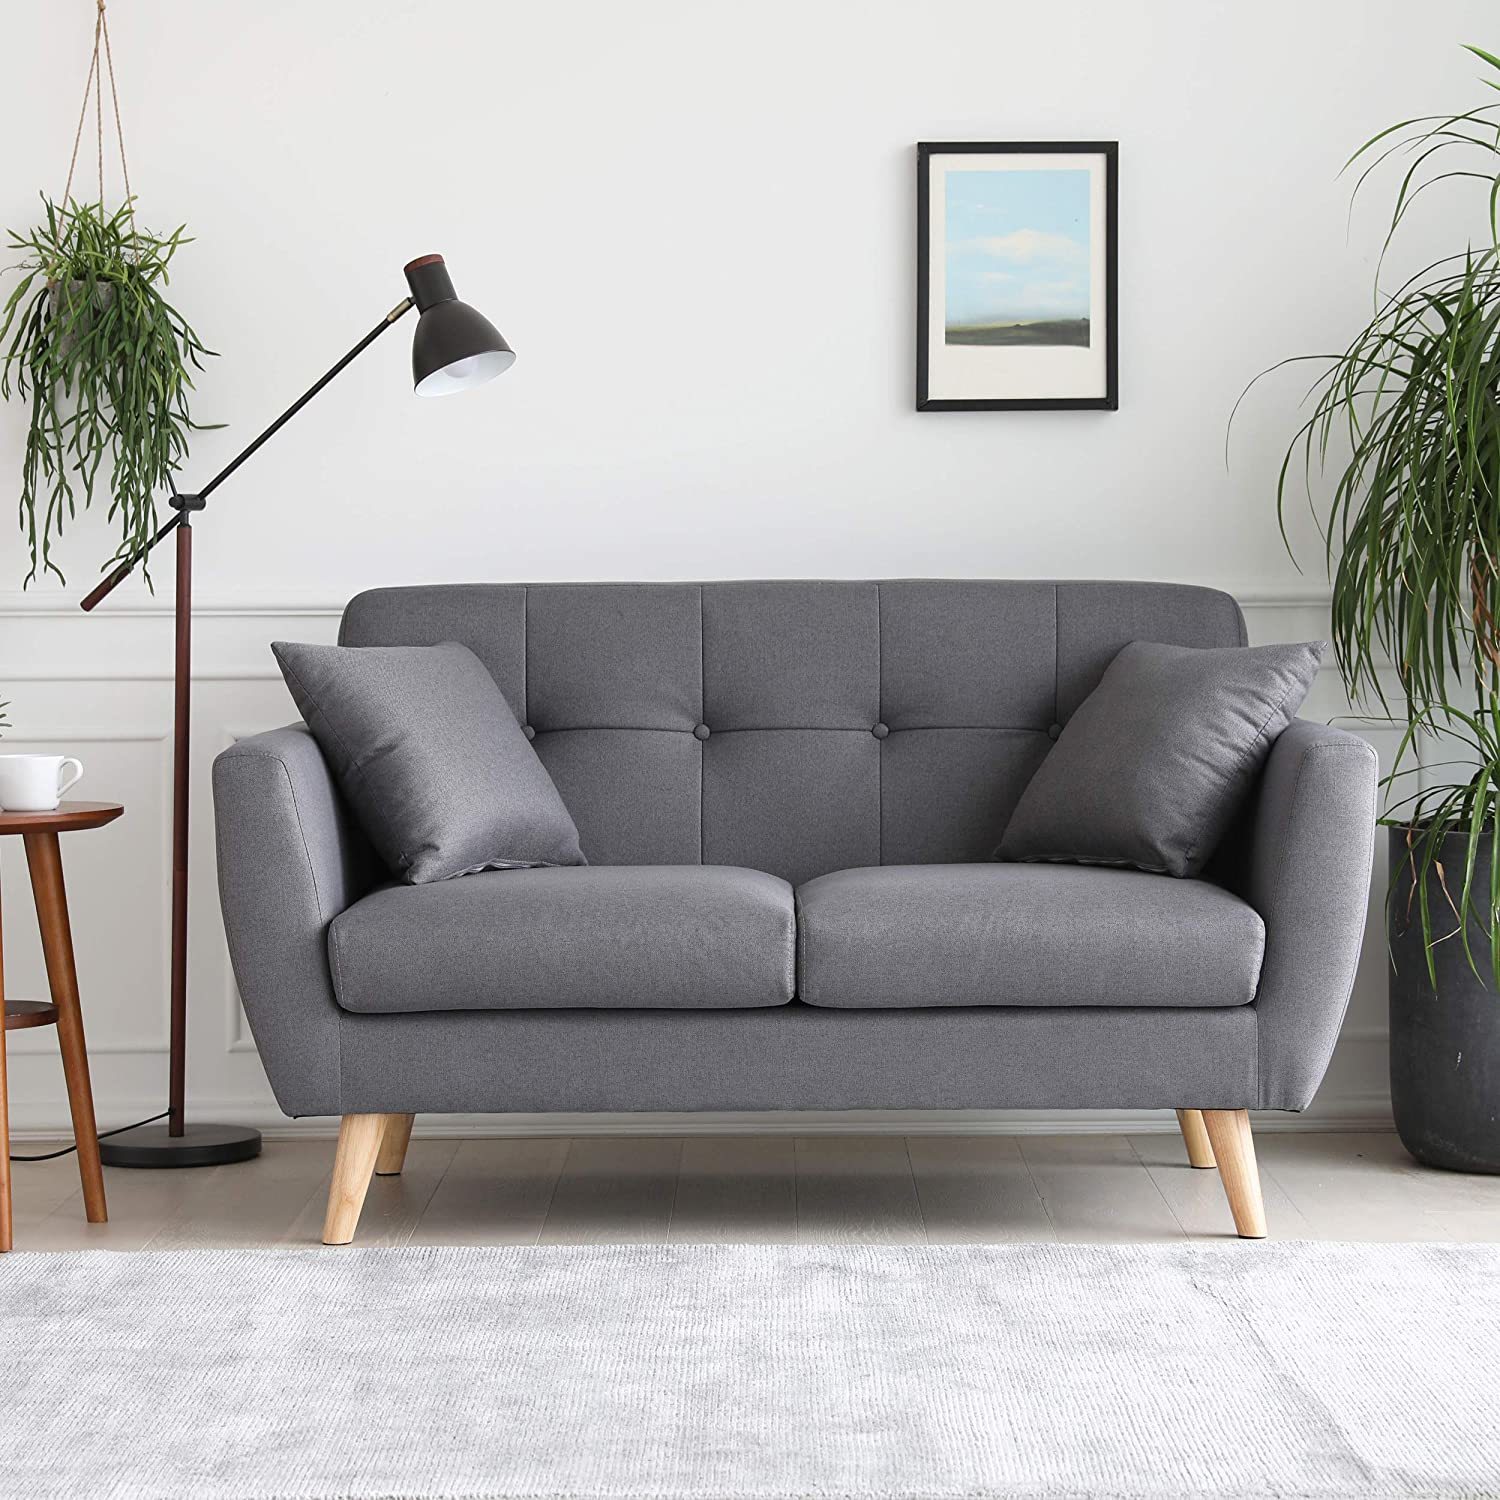 Punta de flecha Catarata recurso renovable Cómo limpiar un sofá de tela | Cómo